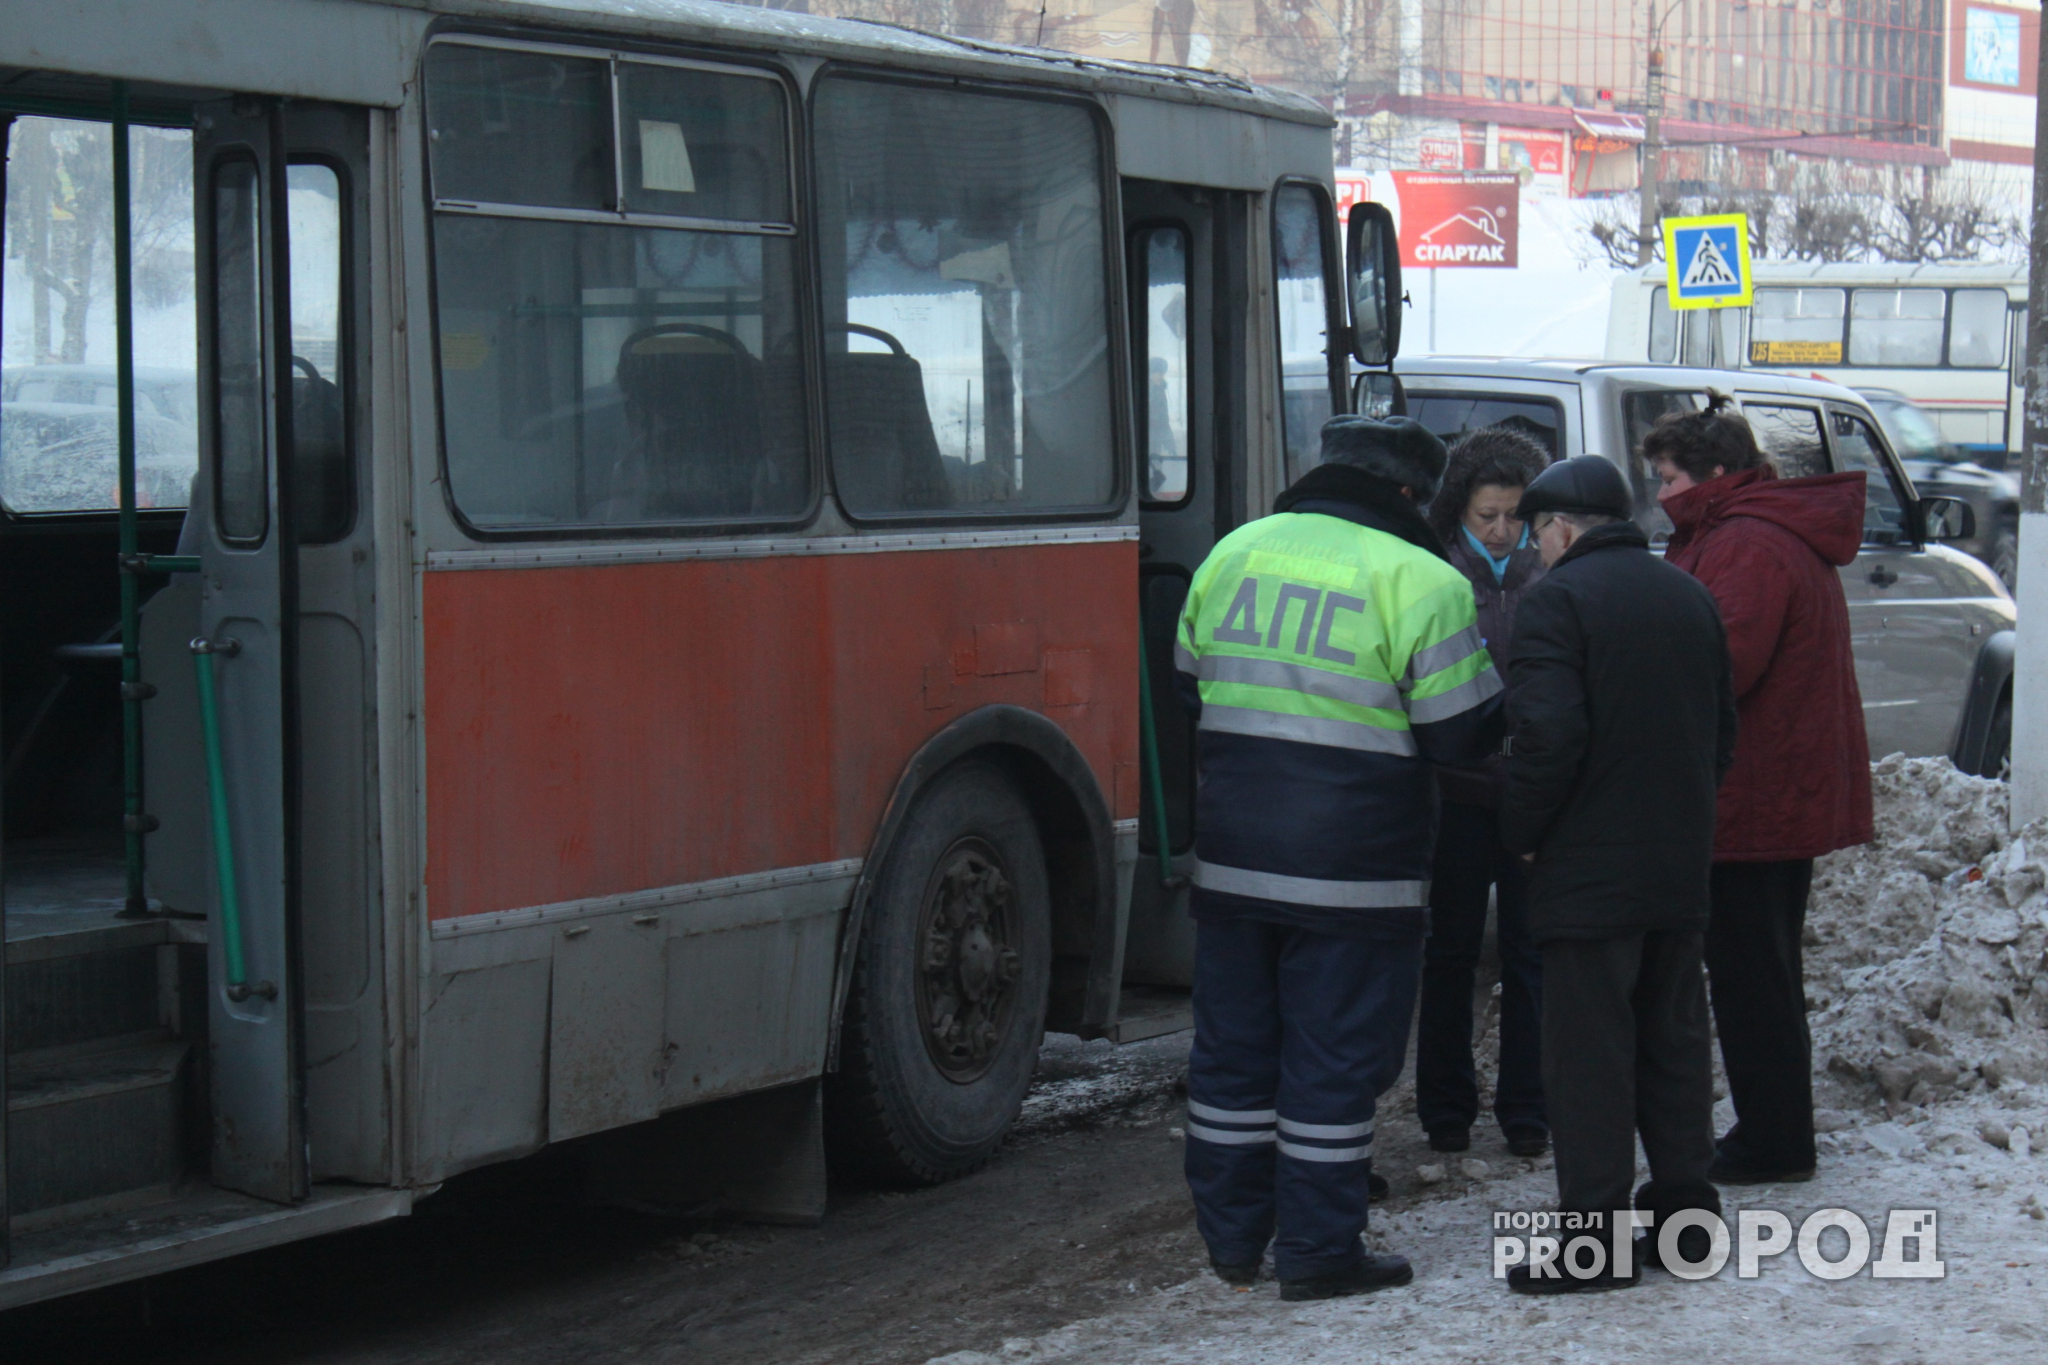 Карма в действии: в Рыбинске карманница после кражи угодила под машину